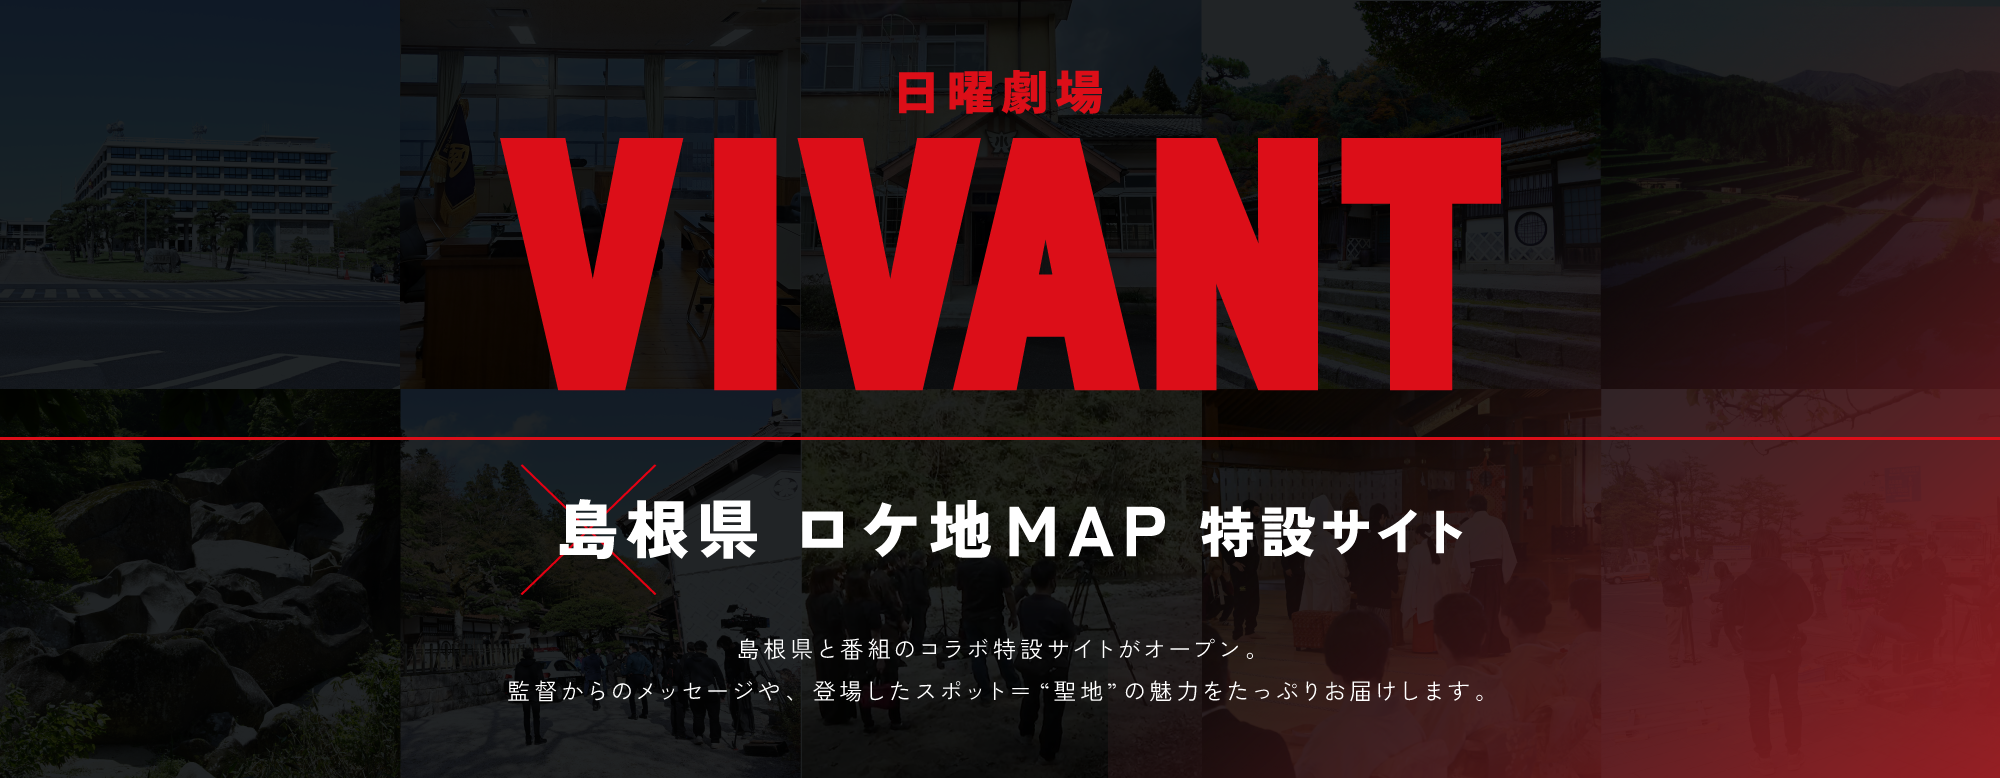 
日曜劇場 VIVANT × 島根県ロケ地MAP 特設サイト